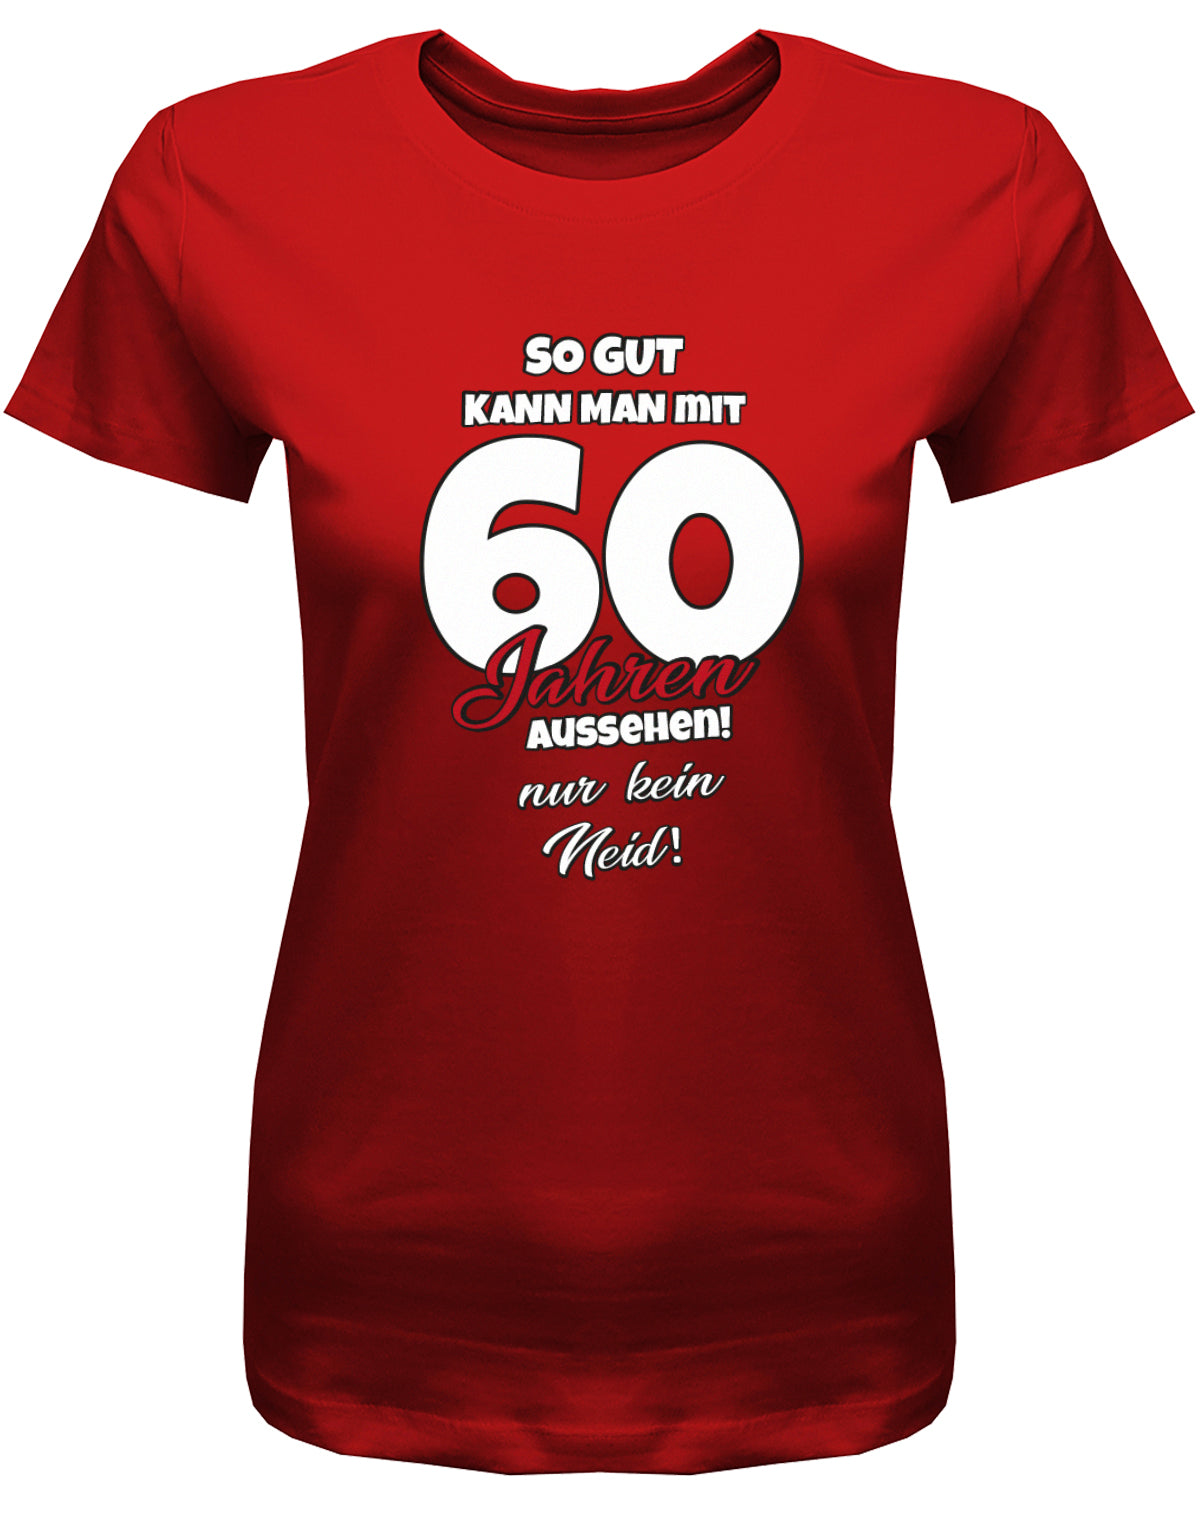 Lustiges T-Shirt zum 60 Geburtstag für die Frau Bedruckt mit So gut kann man mit 60 Jahren aussehen! Nur kein Neid! Rot